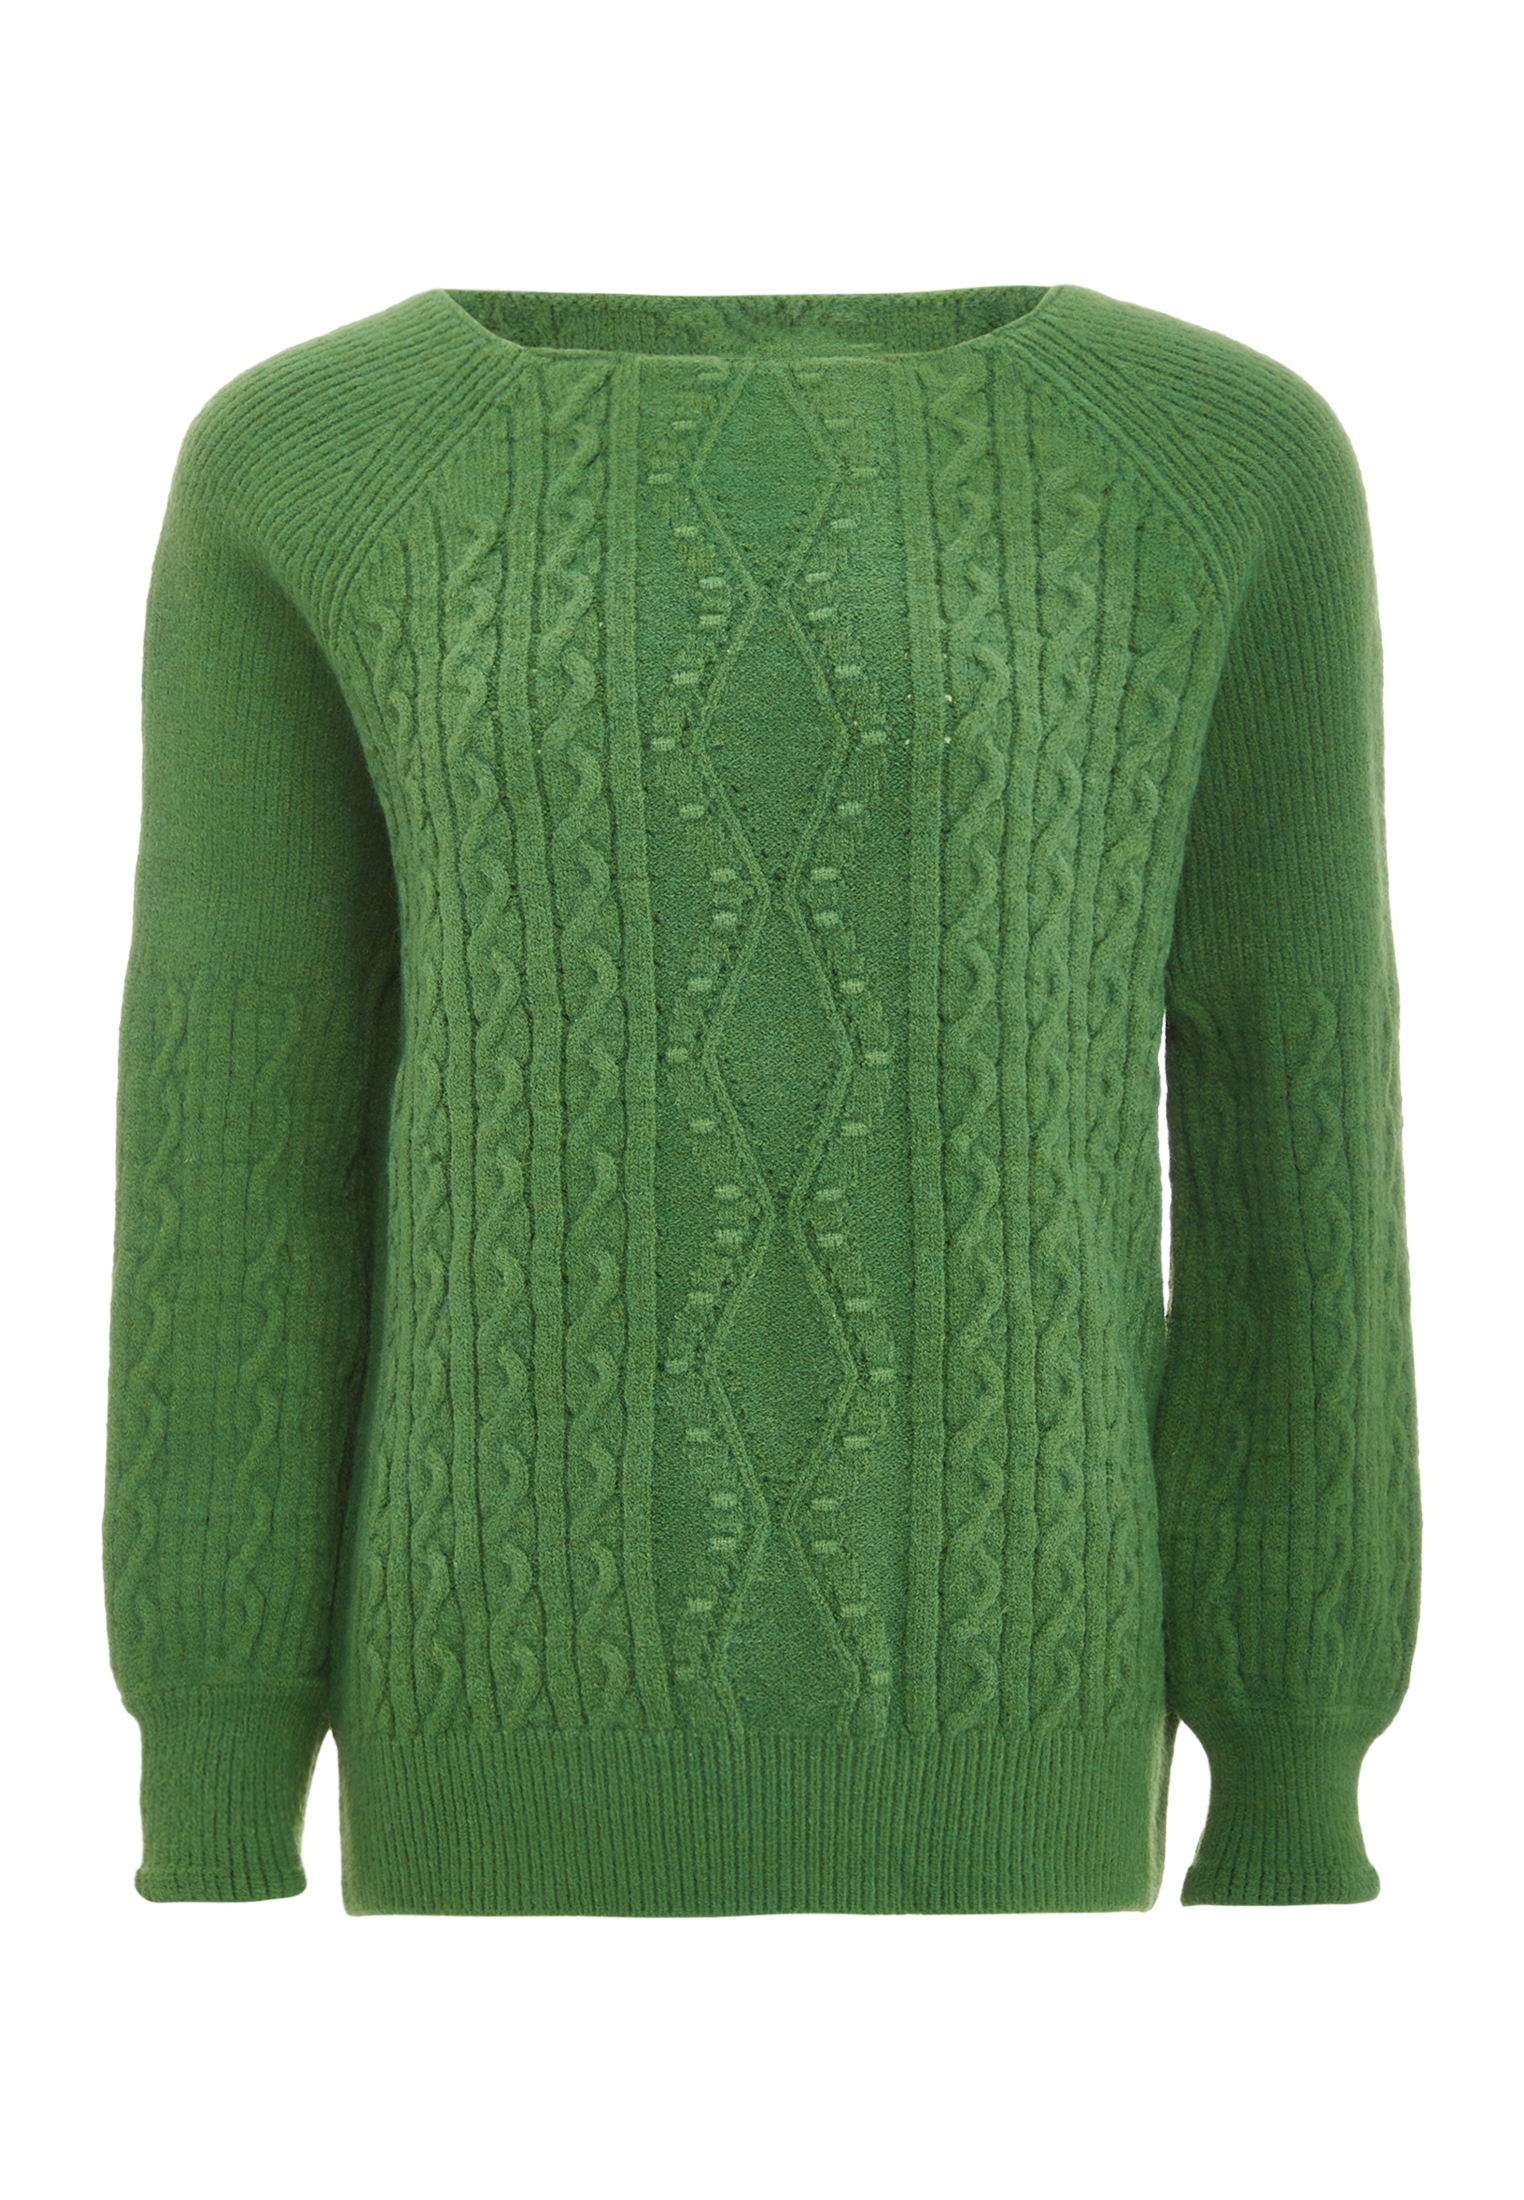 Свитер Tanuna Strick, зеленый свитер tanuna strick цвет senf